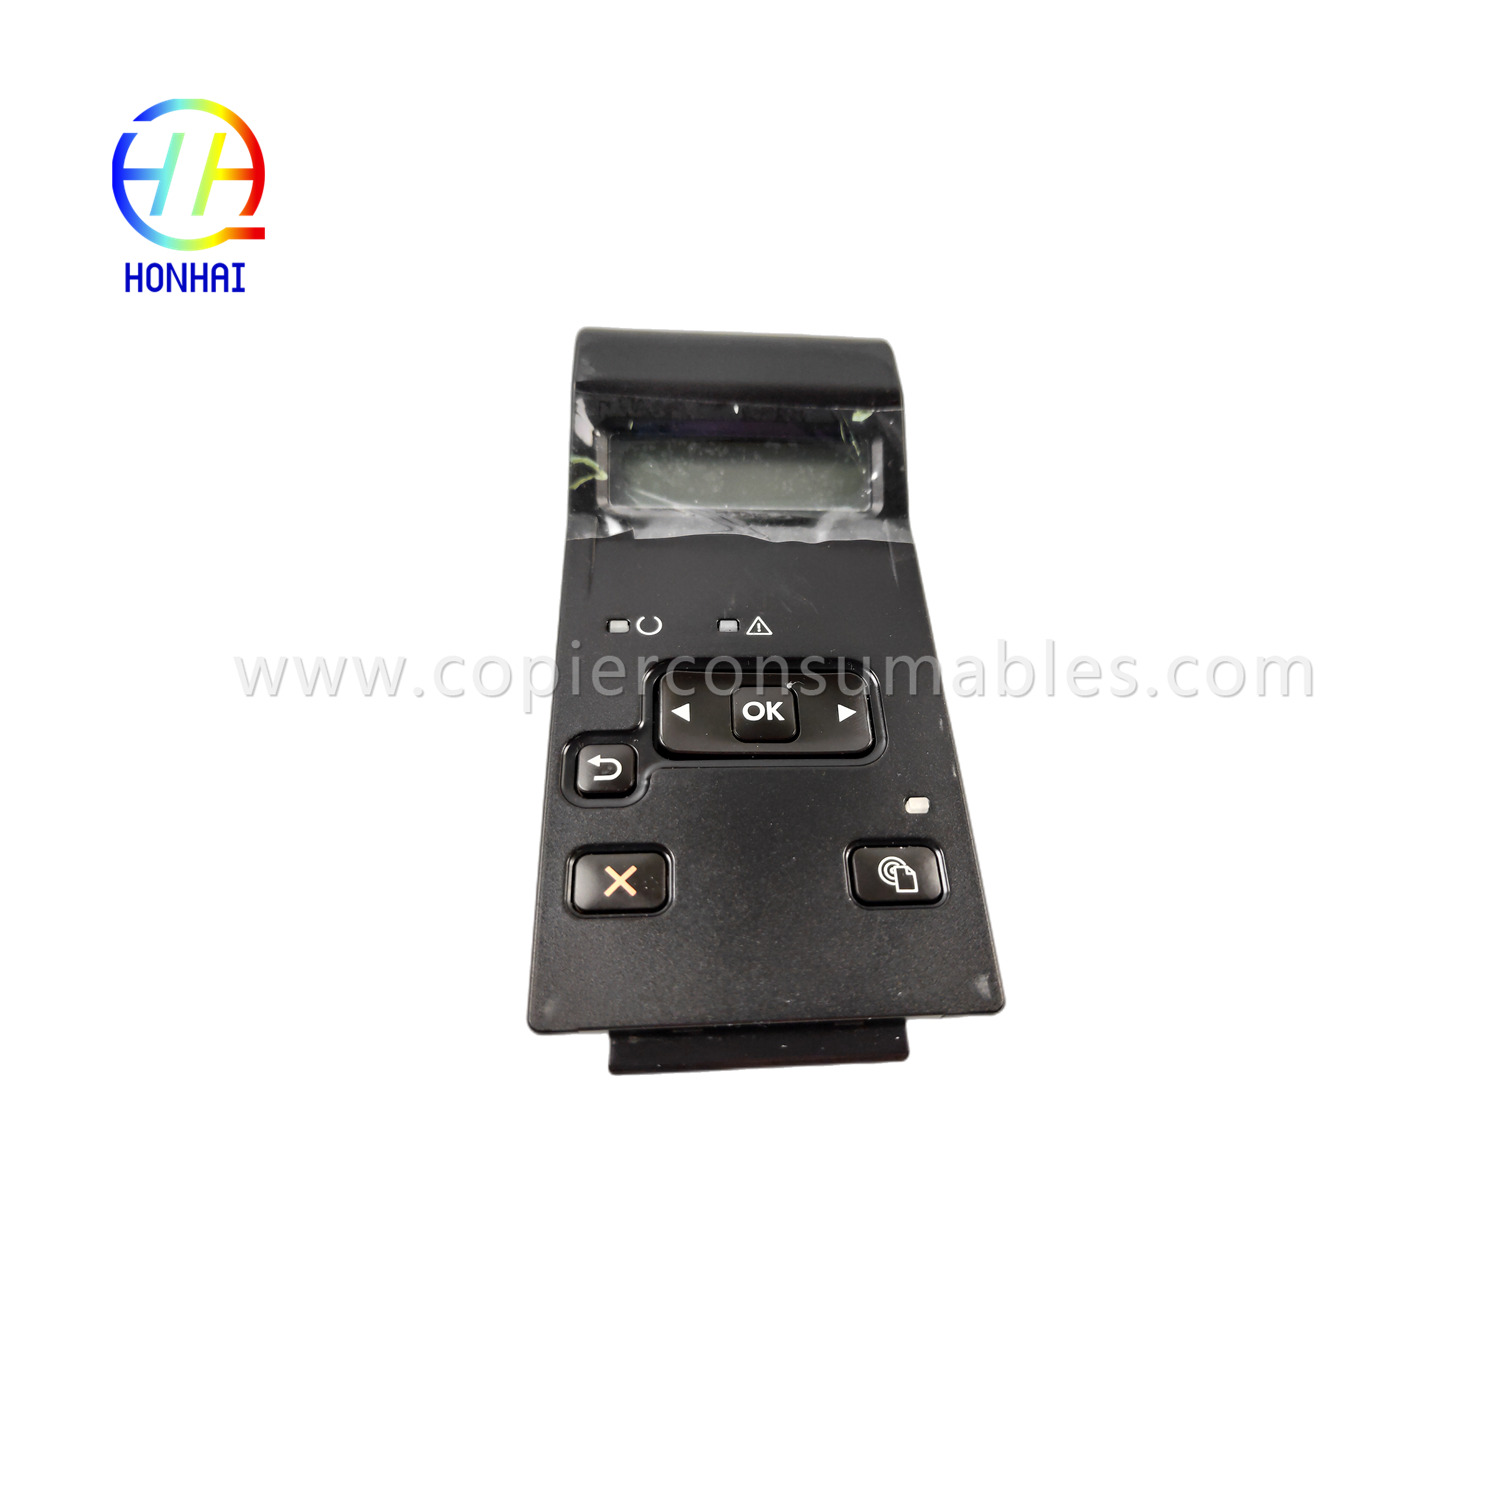 Tela de toque do painel de controle para HP LaserJet 400 M401d M401dn M401n M401 m401 401d 401dn 401n (1)